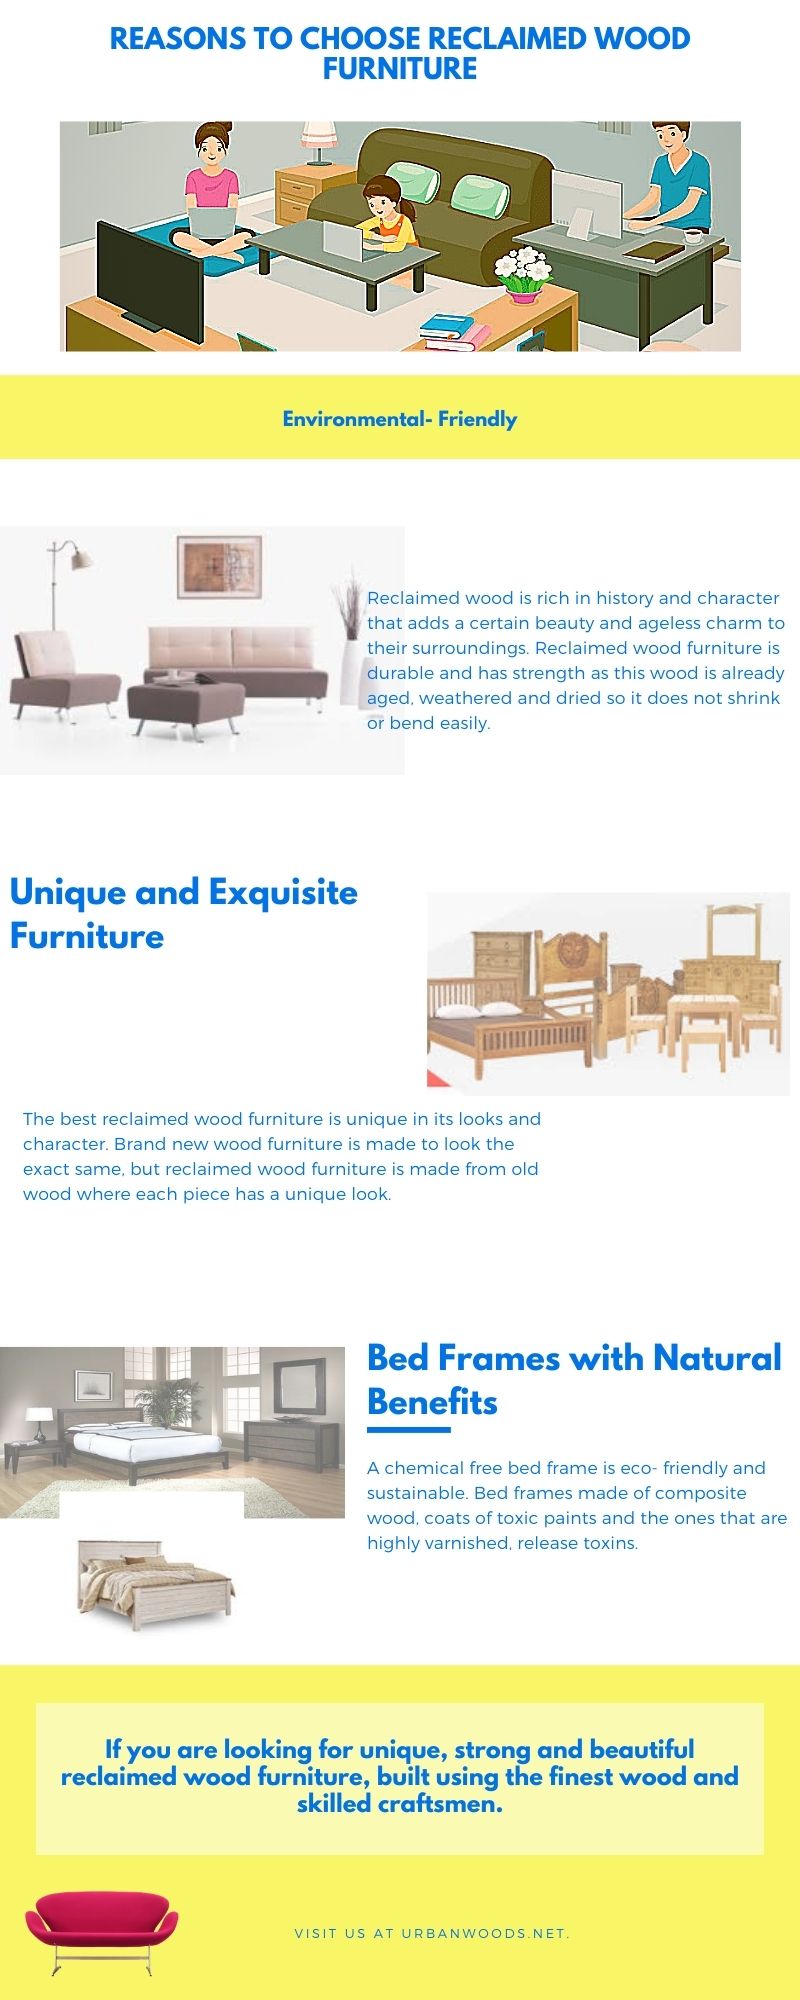 Reasons to Choose Reclaimed Wood Furniture.jpg  by UrbanWoods